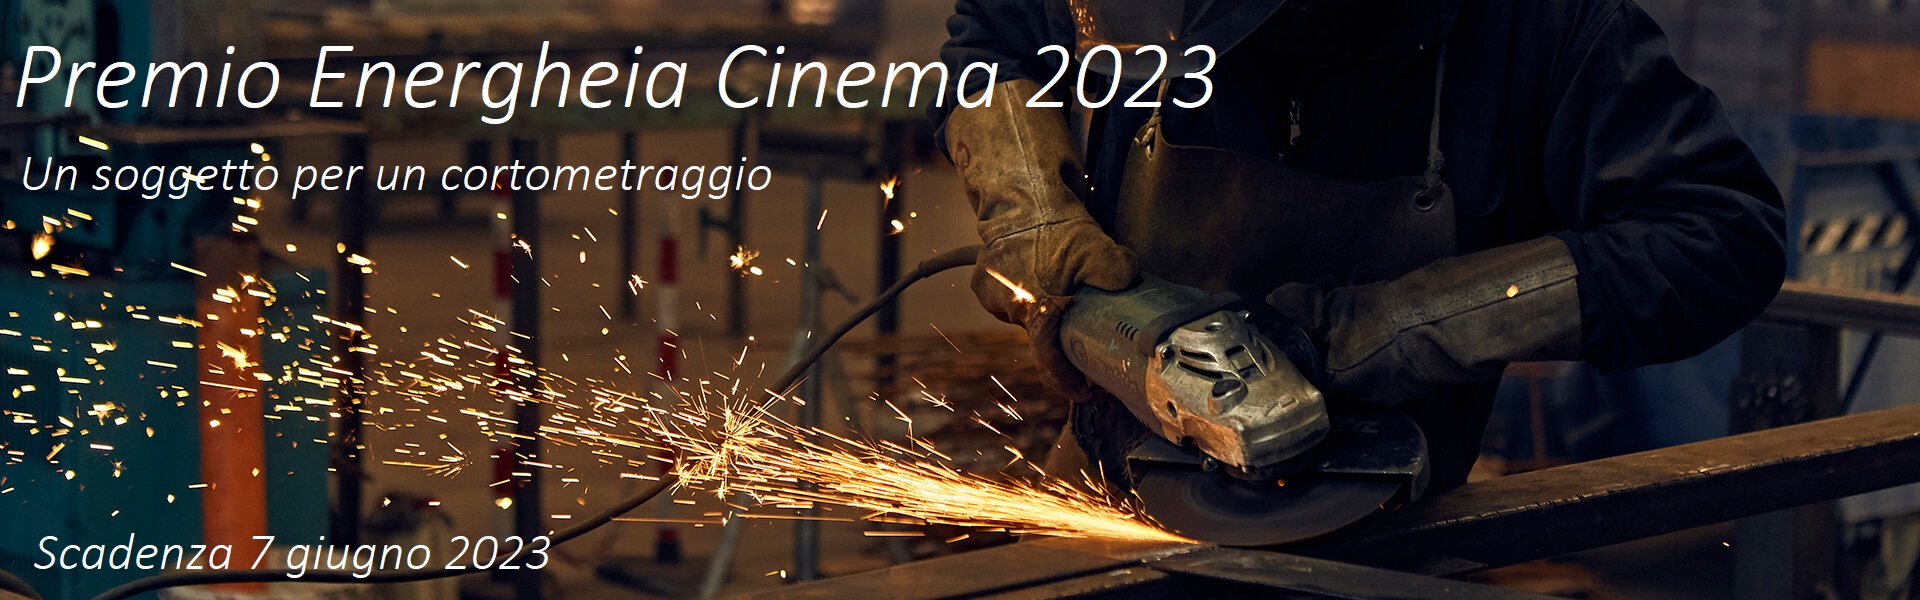 Premio Energheia Cinema. Un soggetto per un cortometraggio. Il bando 2023